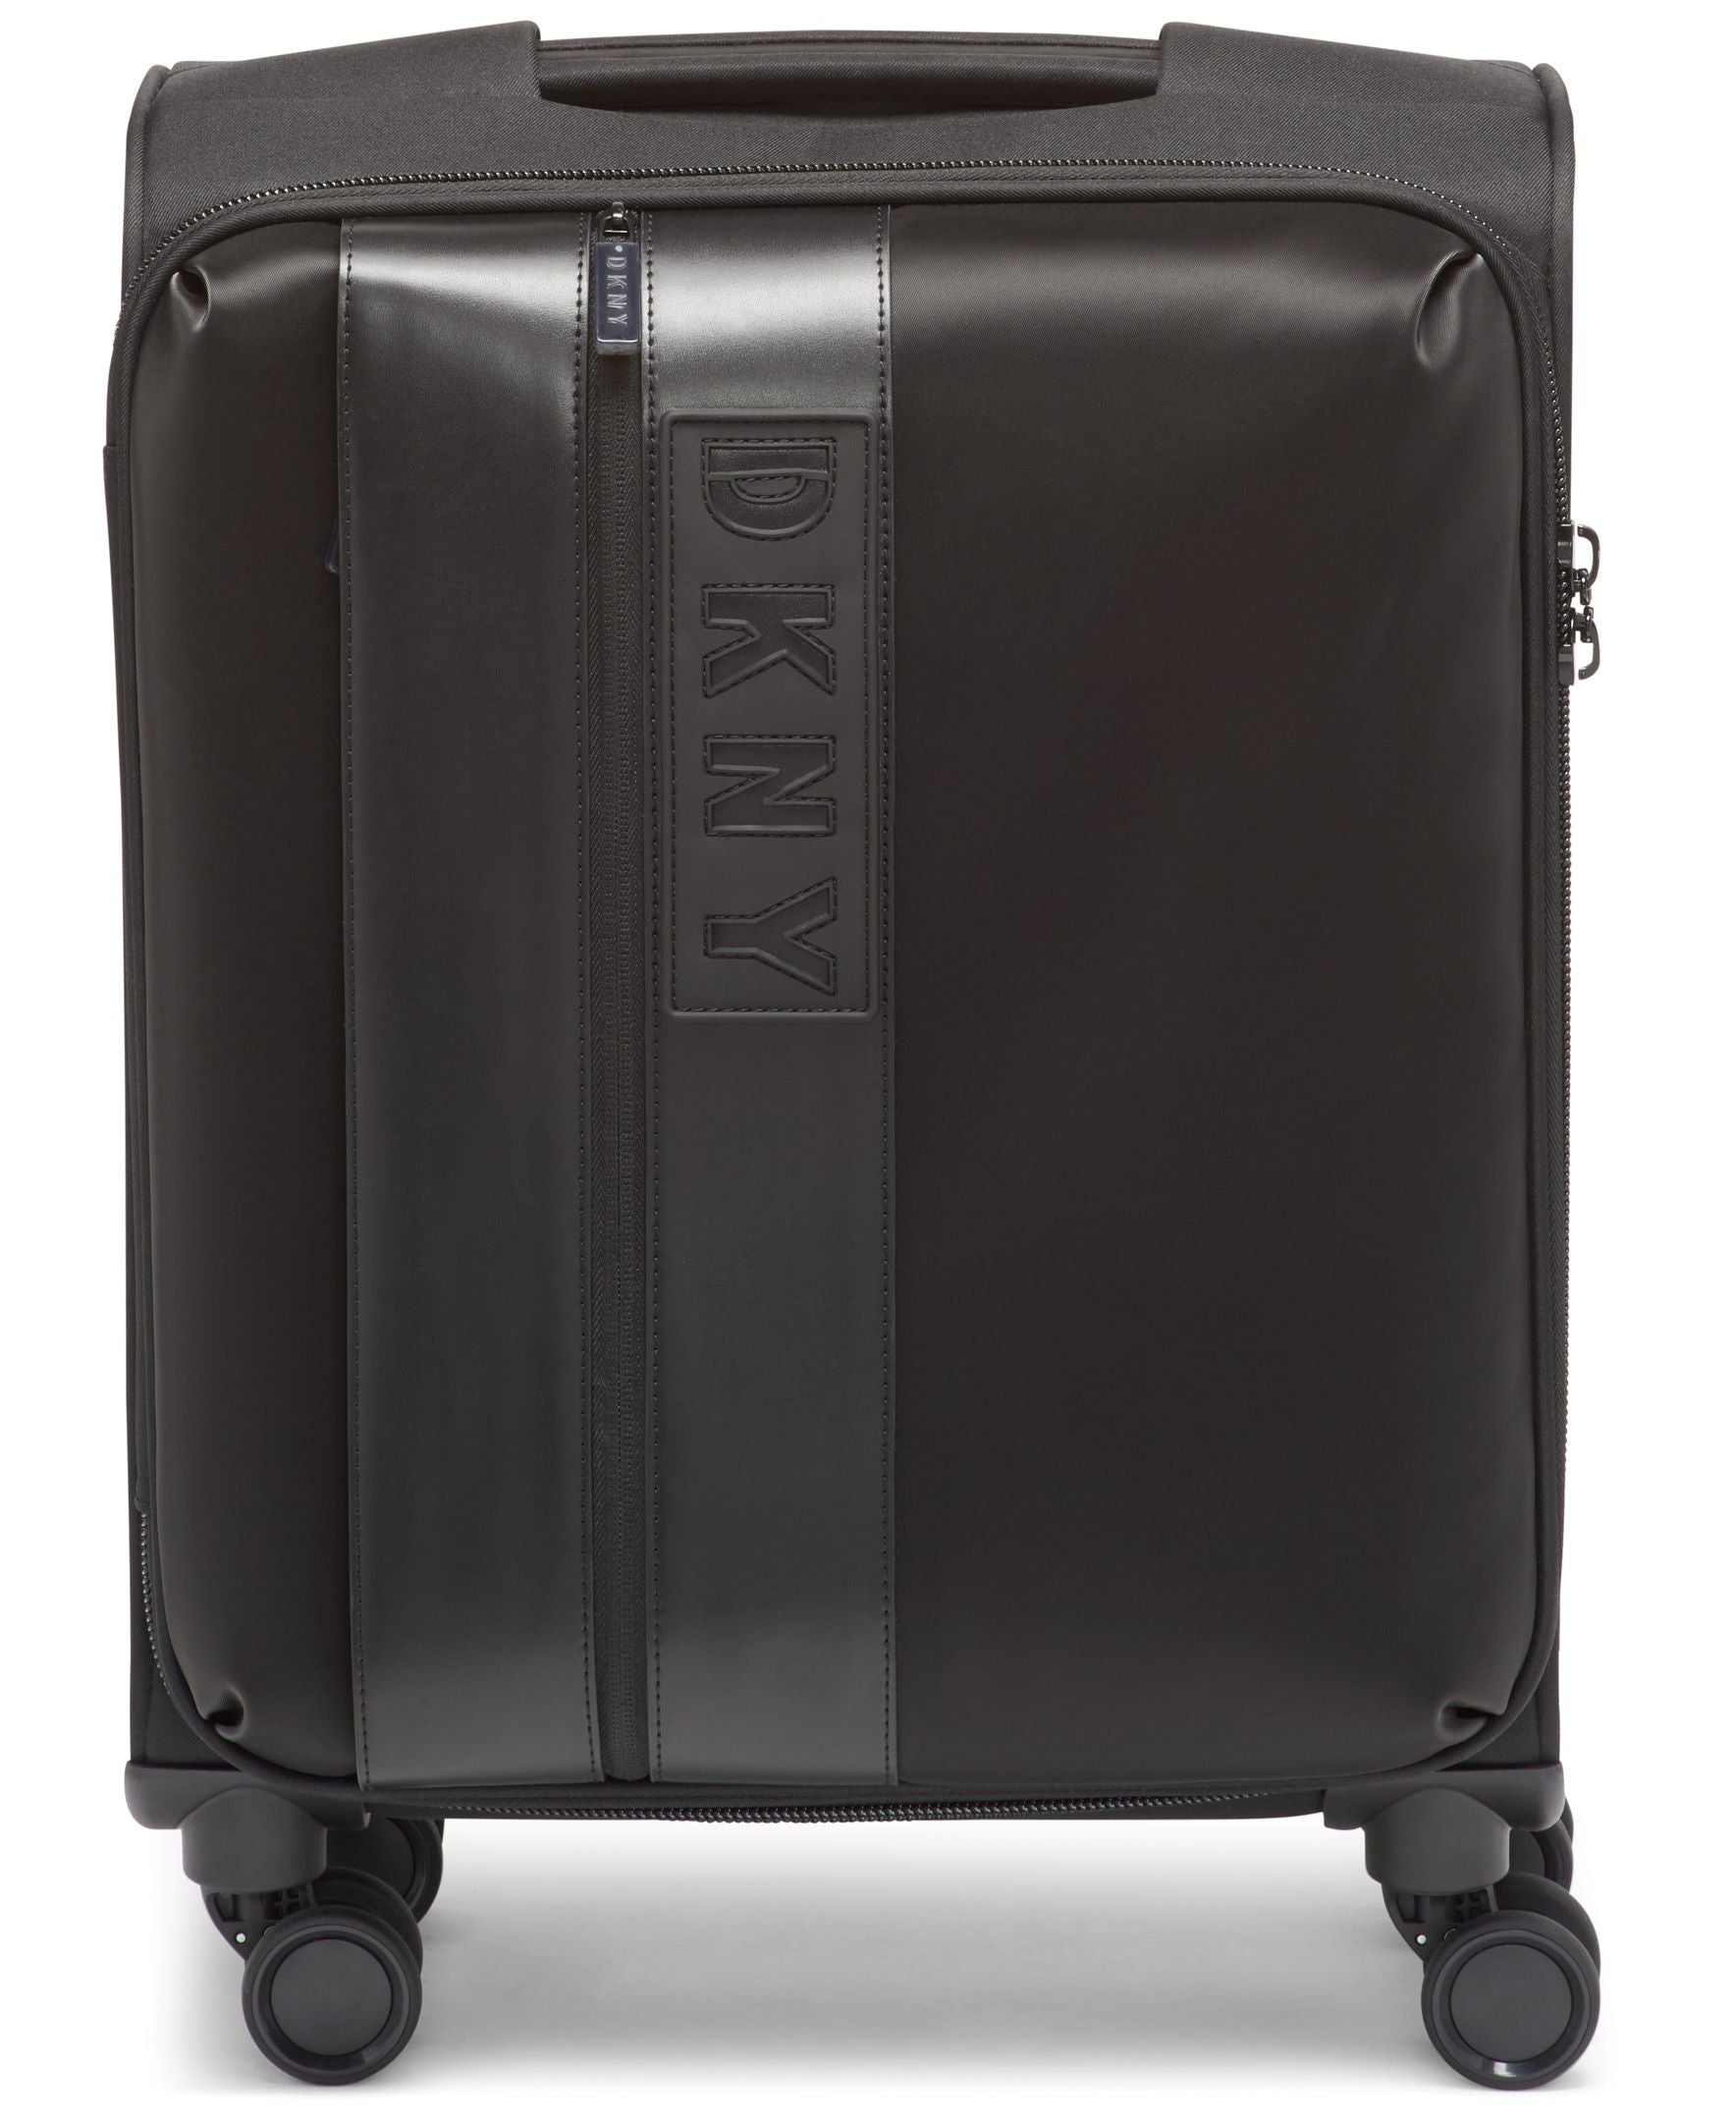 ✮✮בלעדי בישראל✮✮ מזוודה בד גדולה 28" אופנתית מבית מעצבת העל Donna Karan DKNY דגם INSTINCT 408